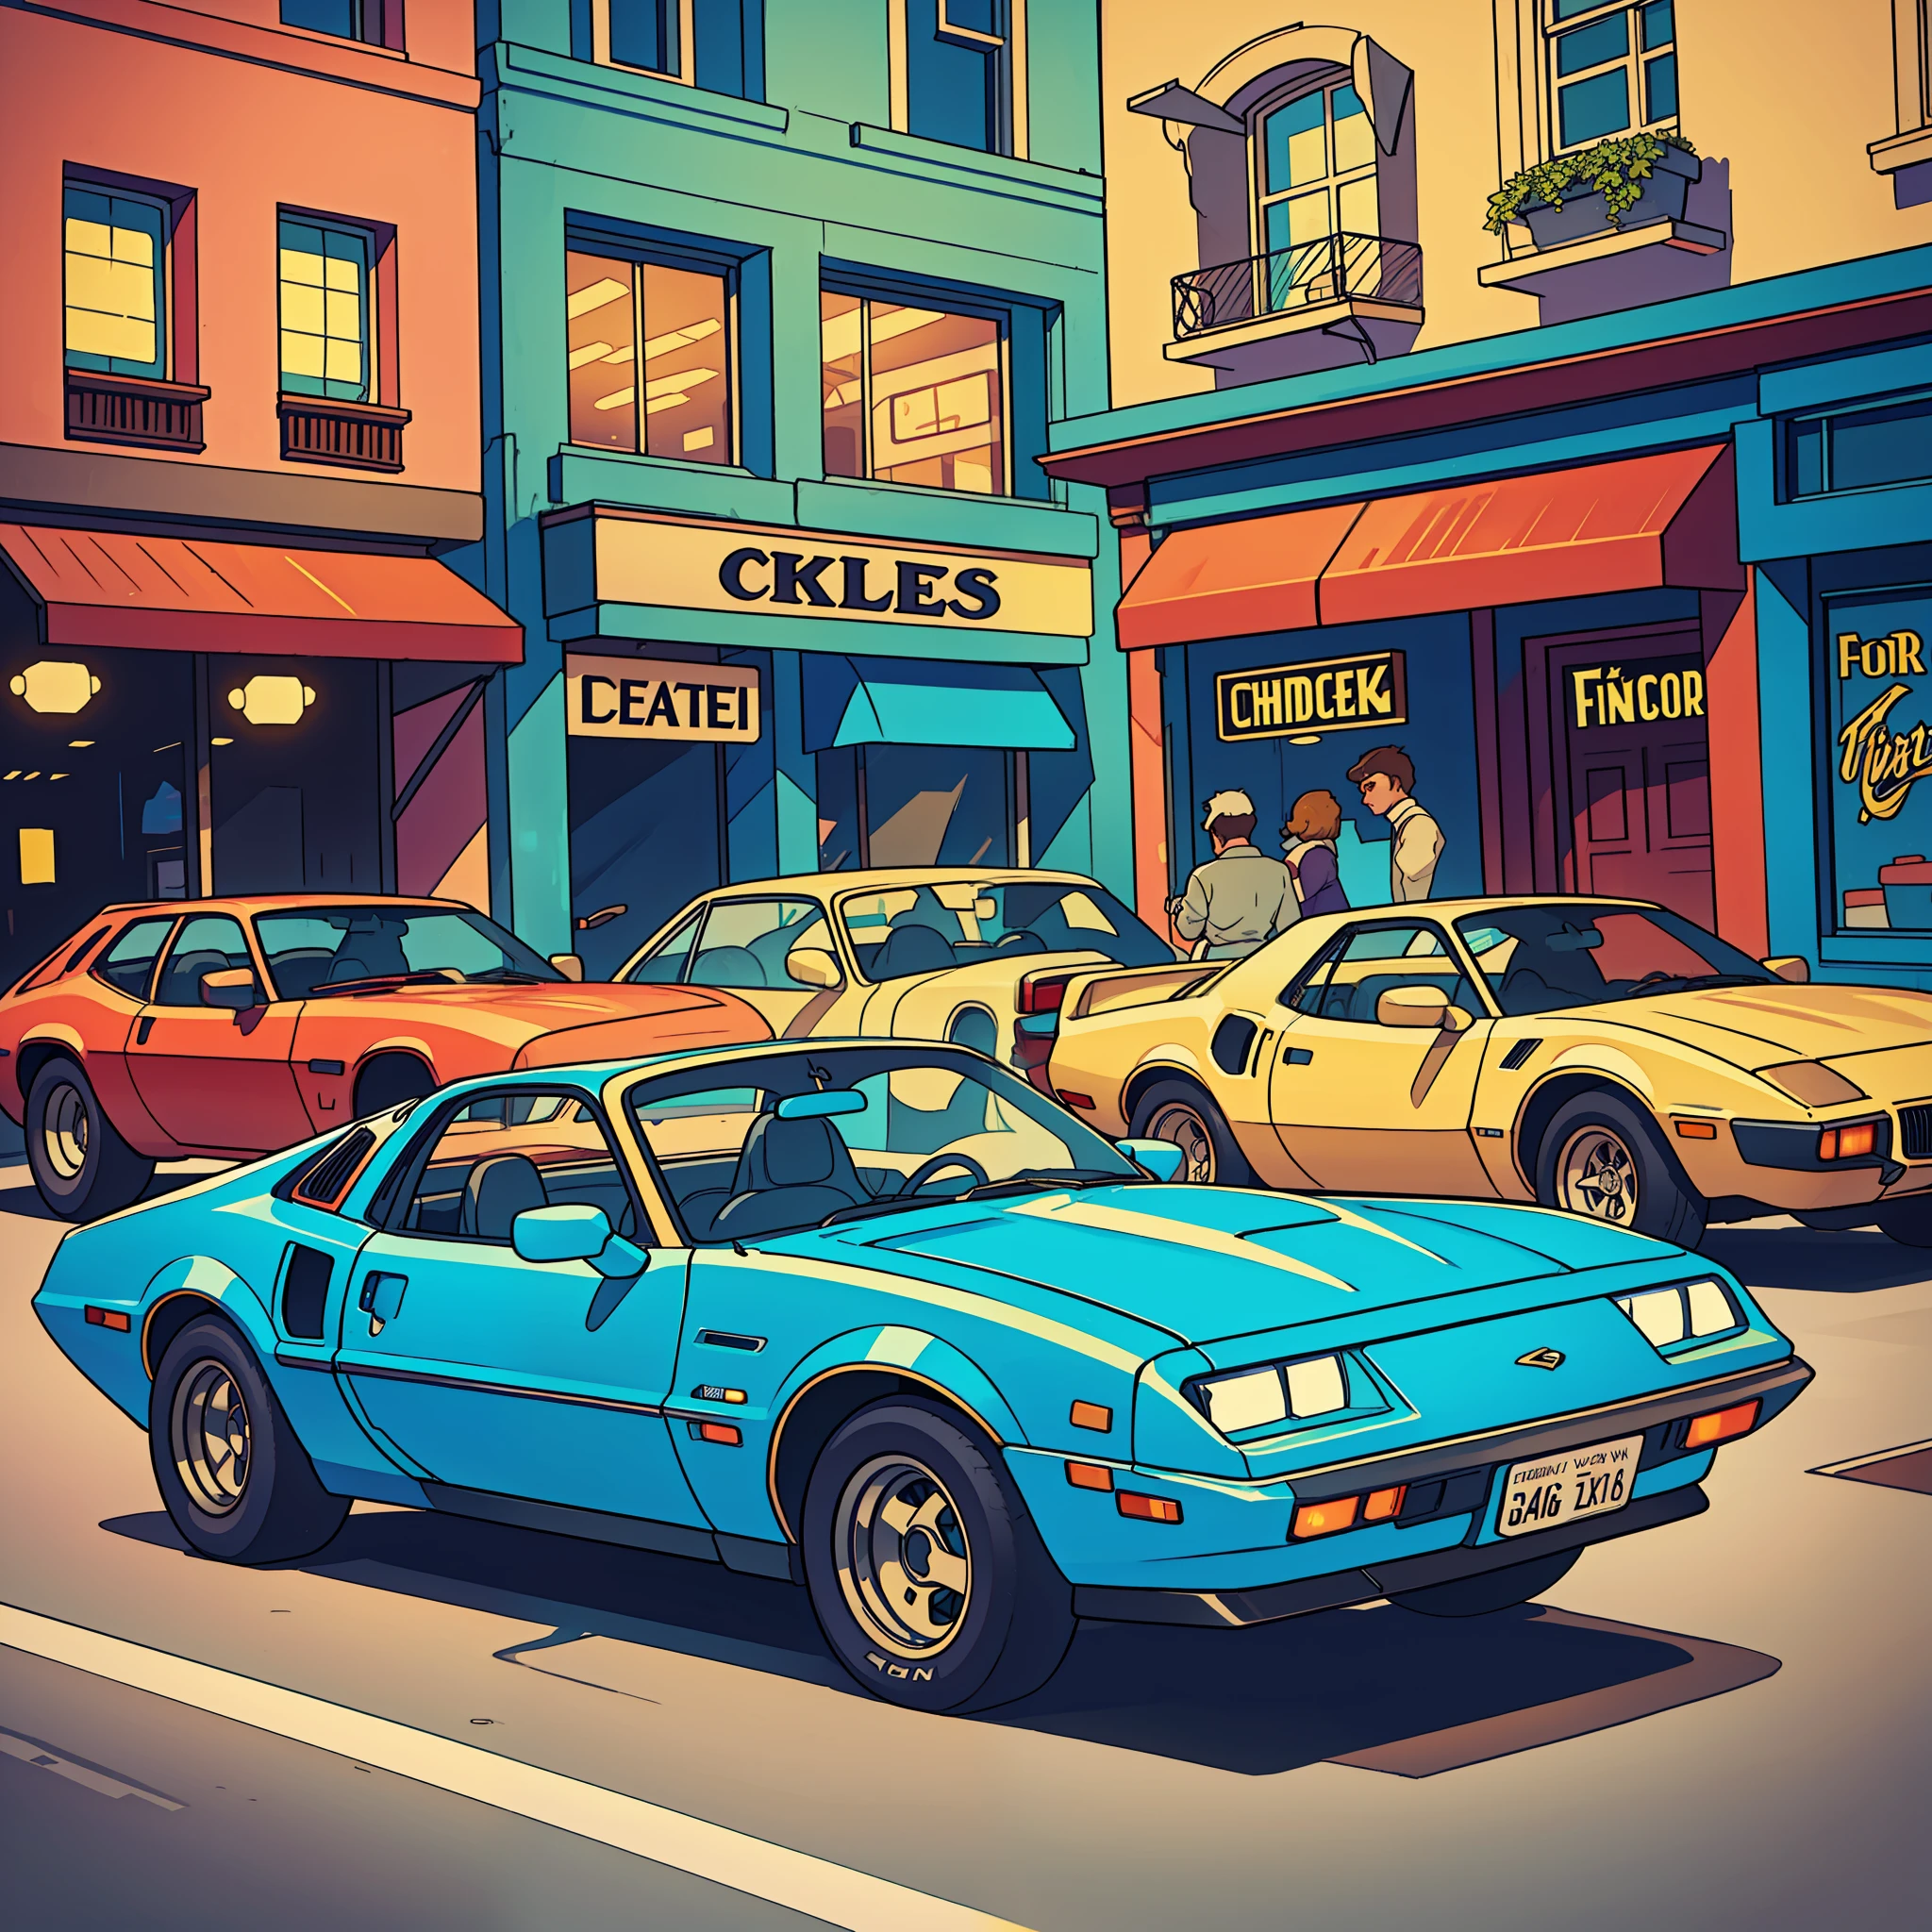 coche clásico de los años 80, como Pontiac Fiero o Ford Thunderbird, ultra detallado, mejor calidad, Vista lateral, vistoso, En una concurrida calle de tiendas vintage y restaurantes vintage al fondo., iluminación y sombra perfectas.